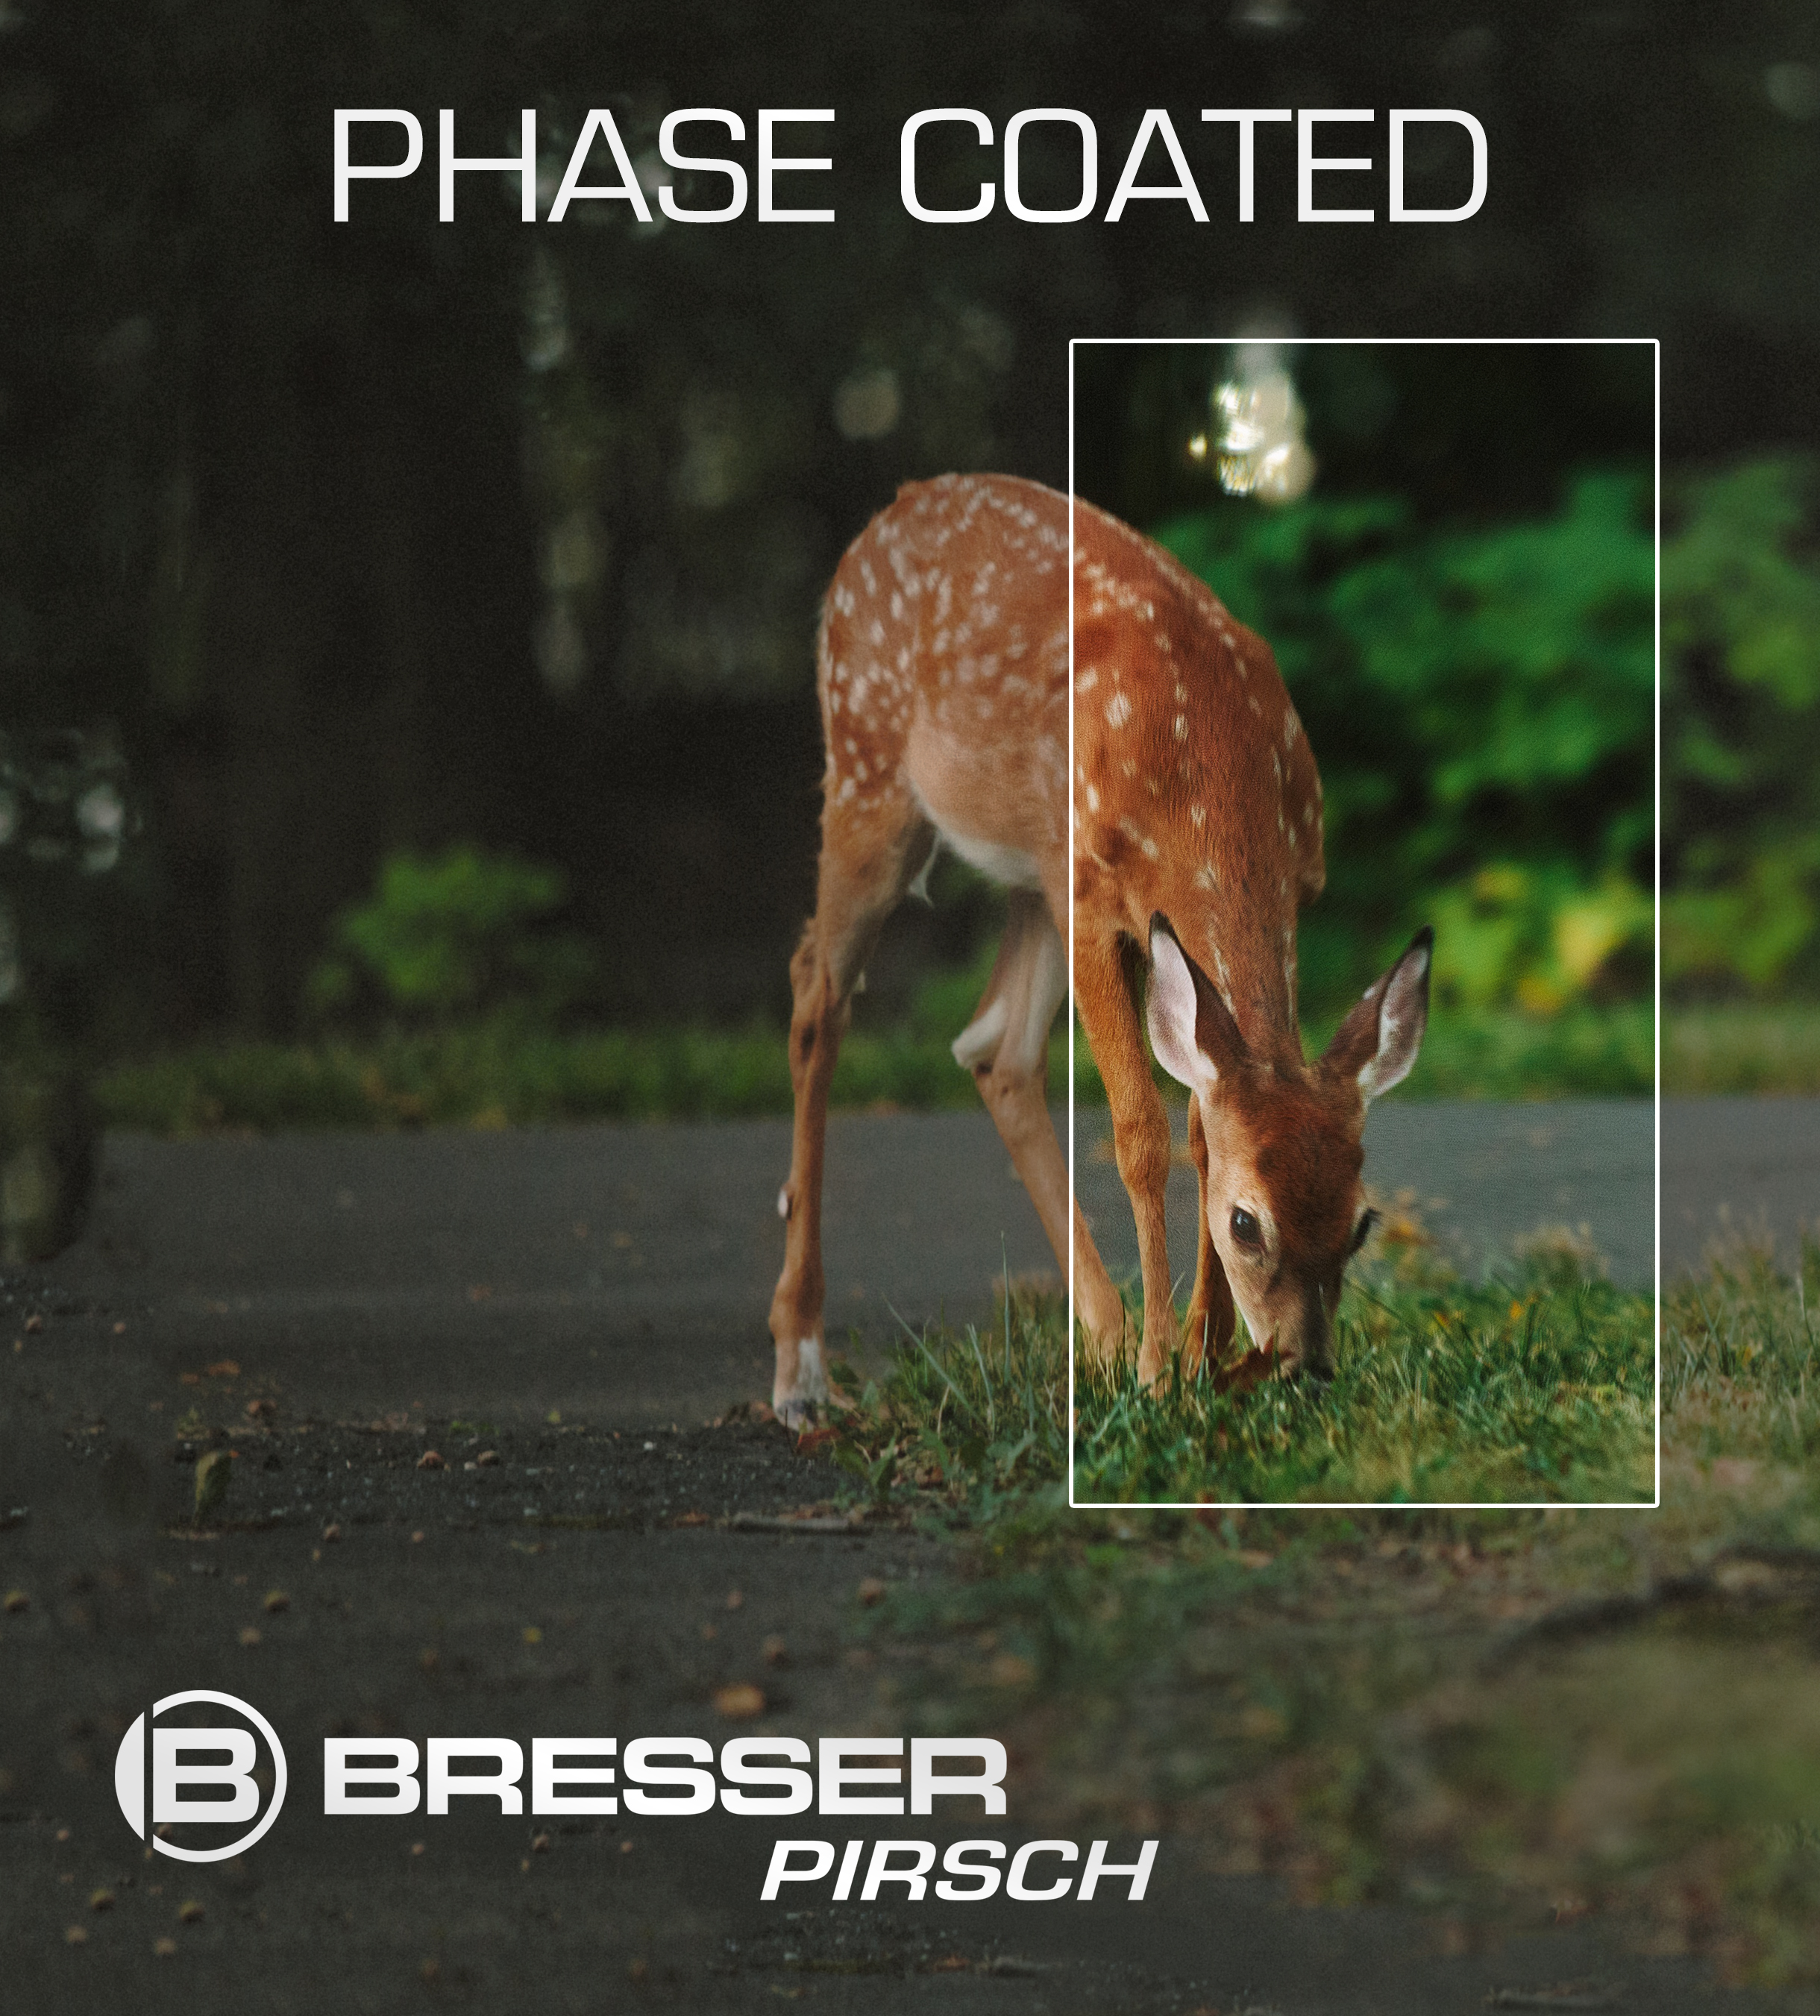 BRESSER Pirsch jumelles 10x34 Phase Coating